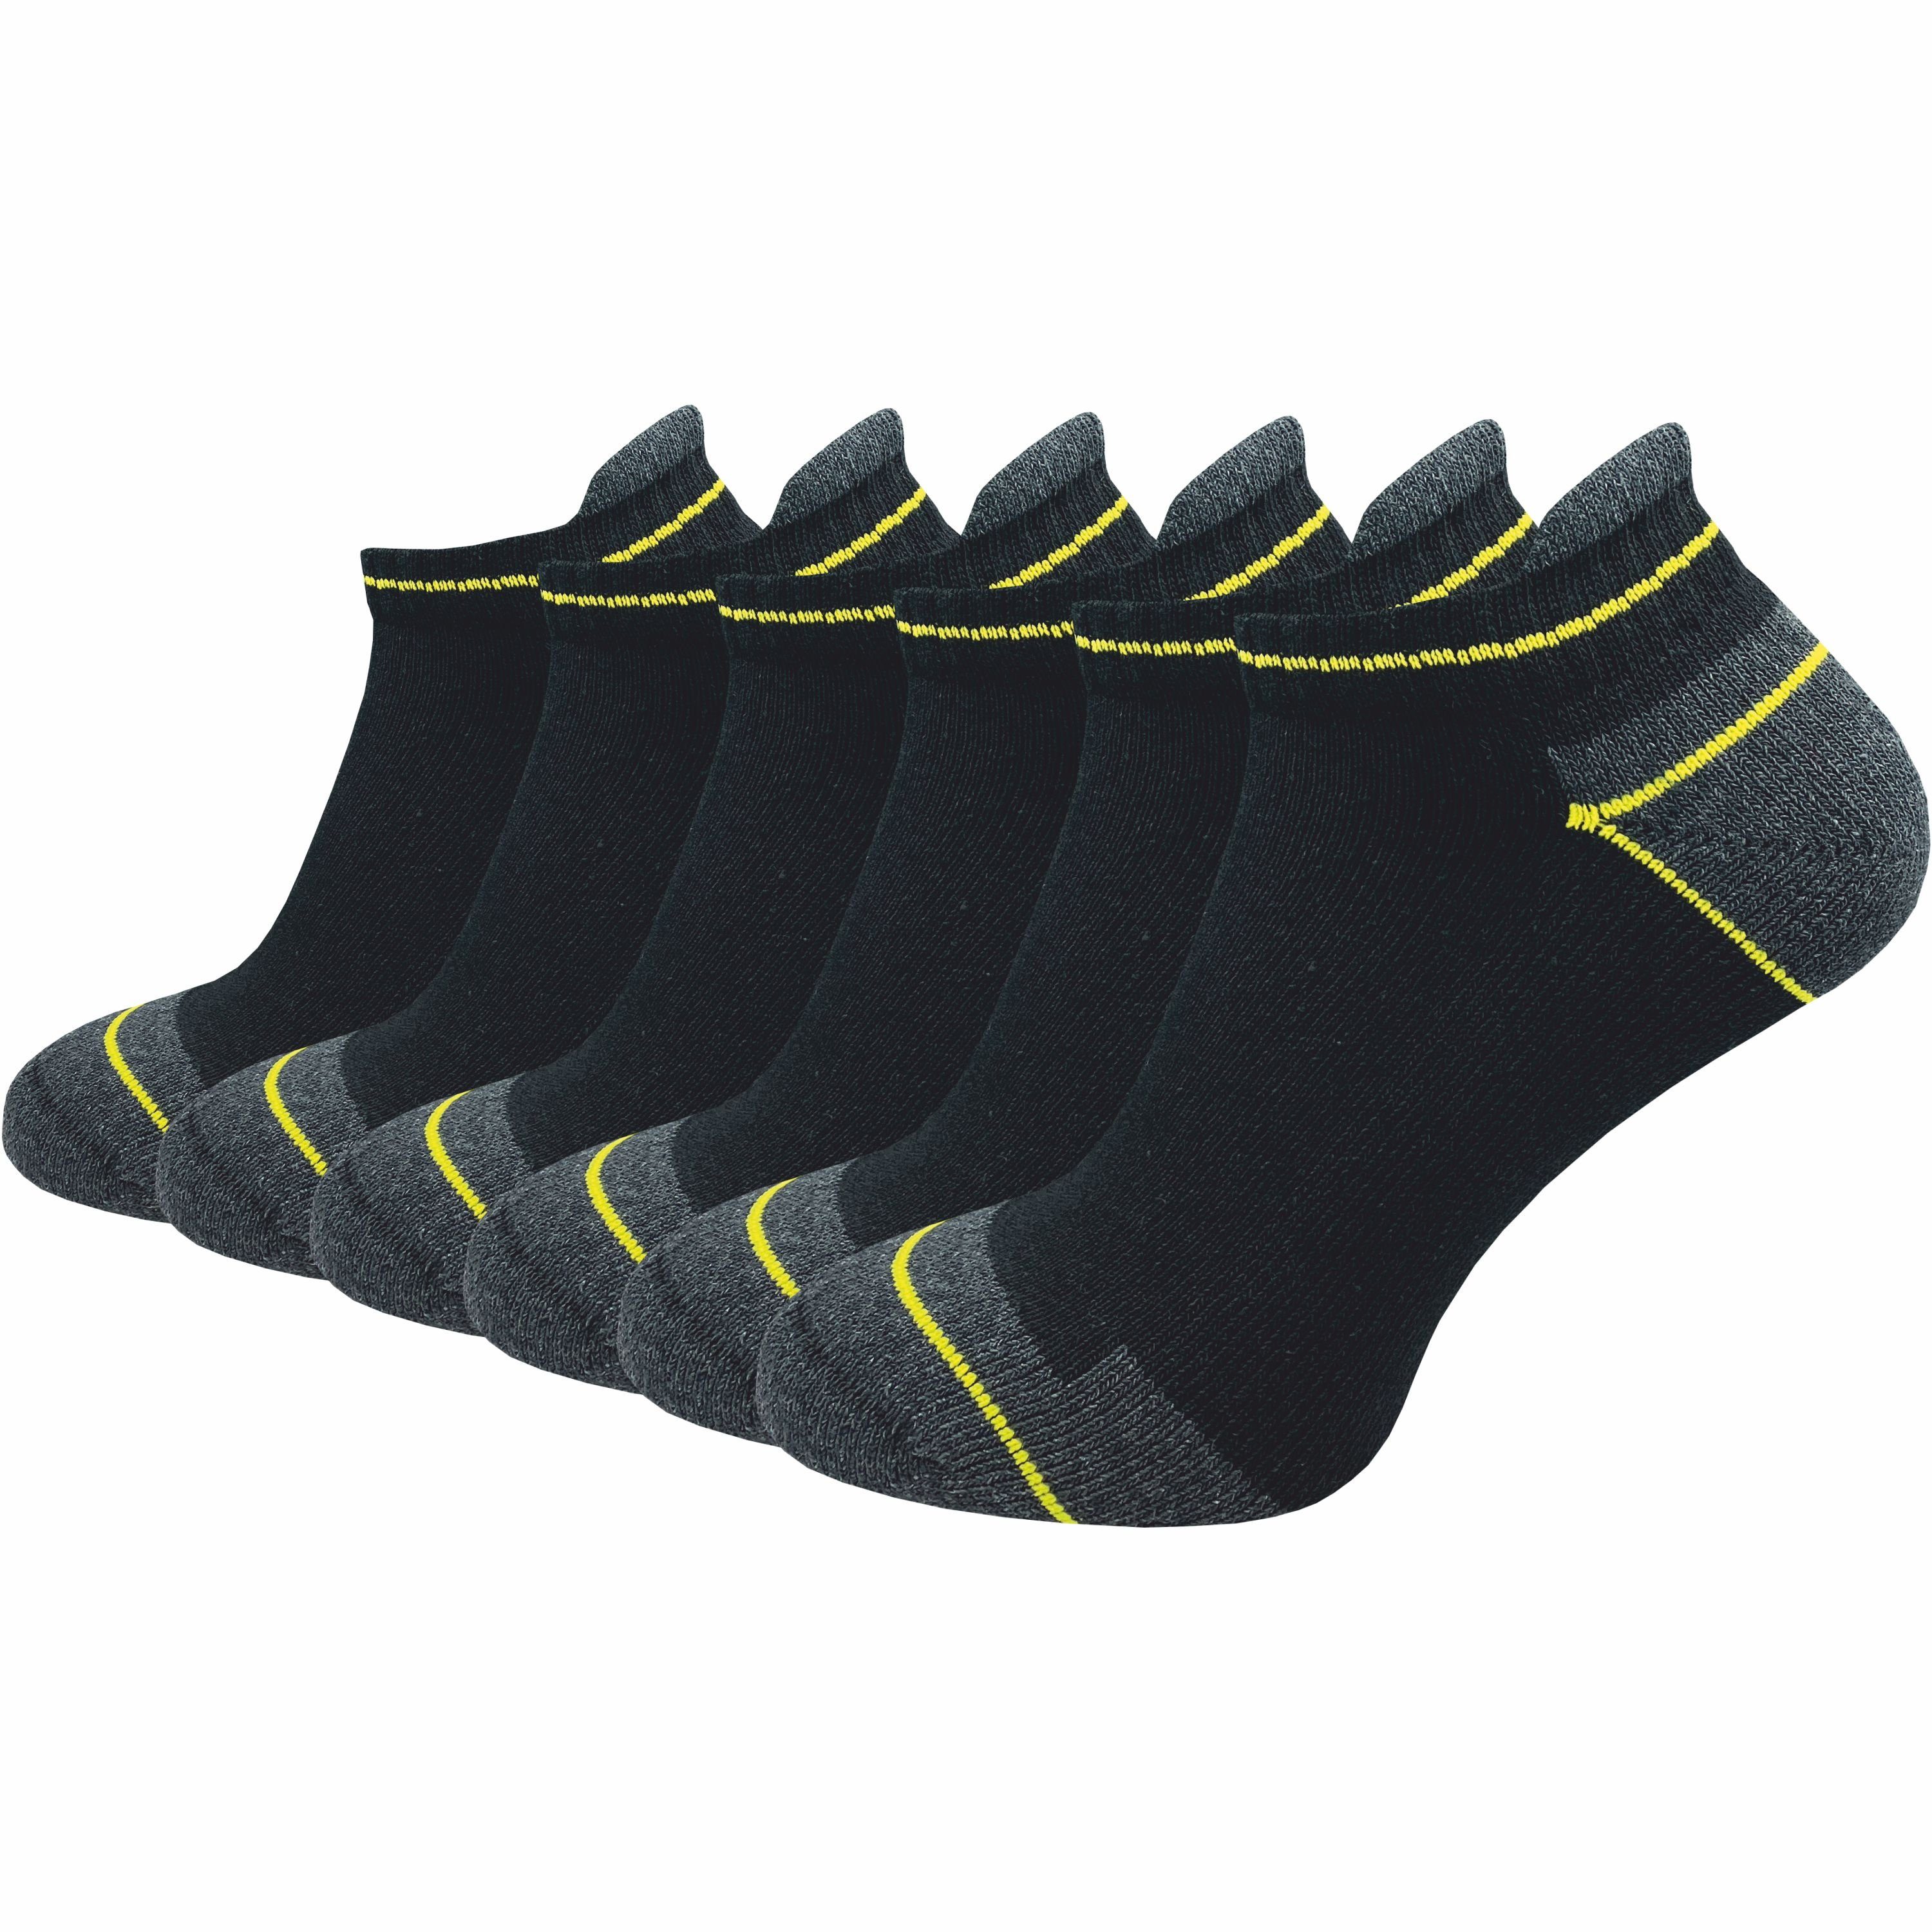 GAWILO Arbeitssocken - kurz - für Herren mit atmungsaktiver Baumwolle gegen Schweißfüße (6 Paar) Ideal für Sicherheitsschuhe oder Arbeitsschuhe - mit Fersenlasche